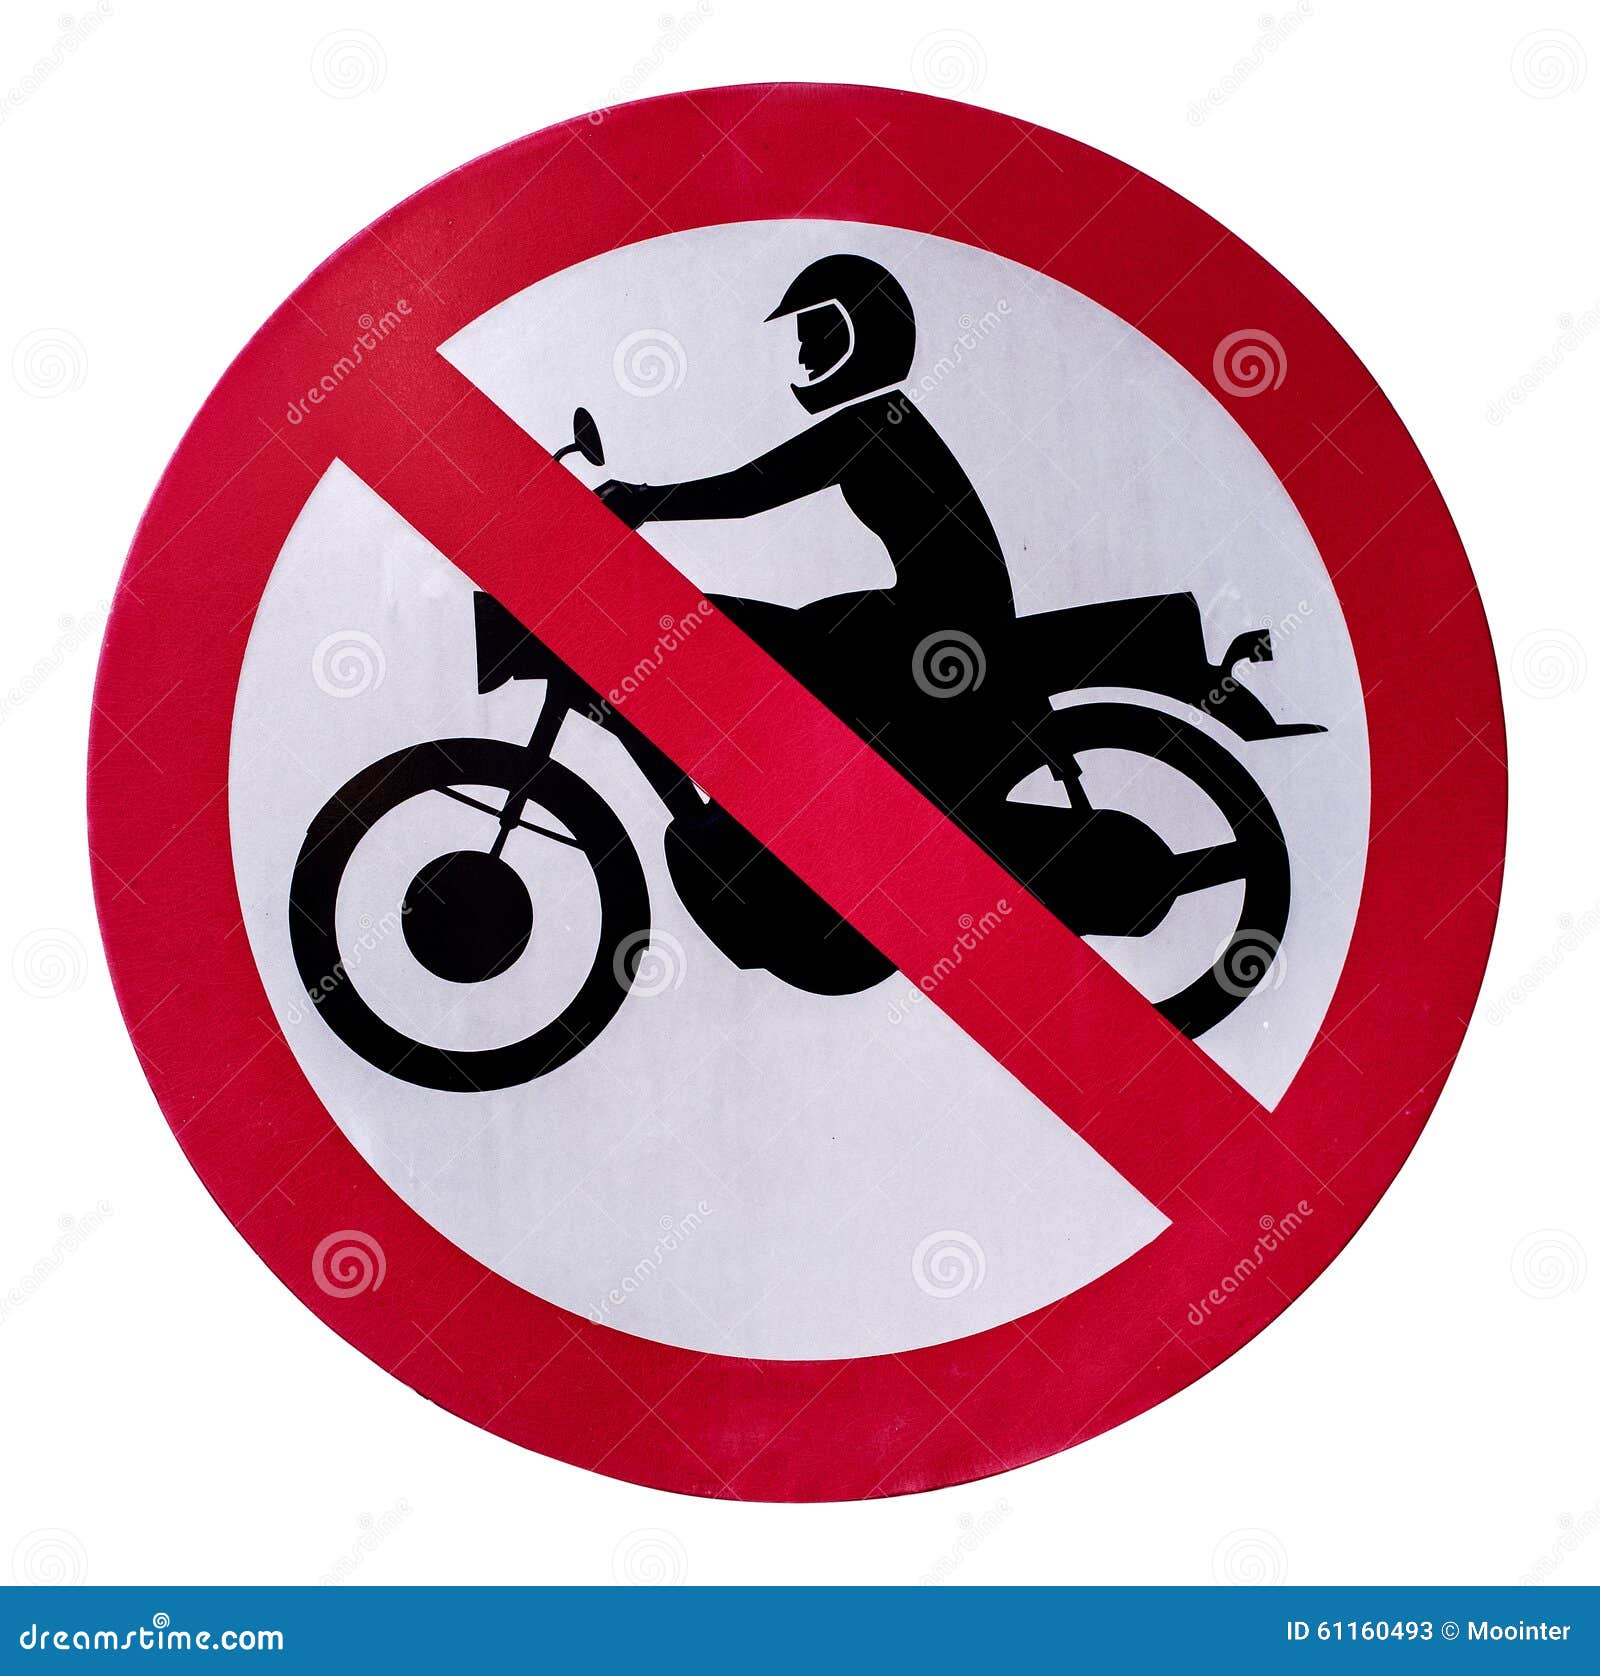 Знак машина и мотоцикл перечеркнутый. Дорожный знак мотоцикл. Знак запрета мотоциклов. Знак зачёркнутый мотоцикл. Круглый знак с мотоциклом.